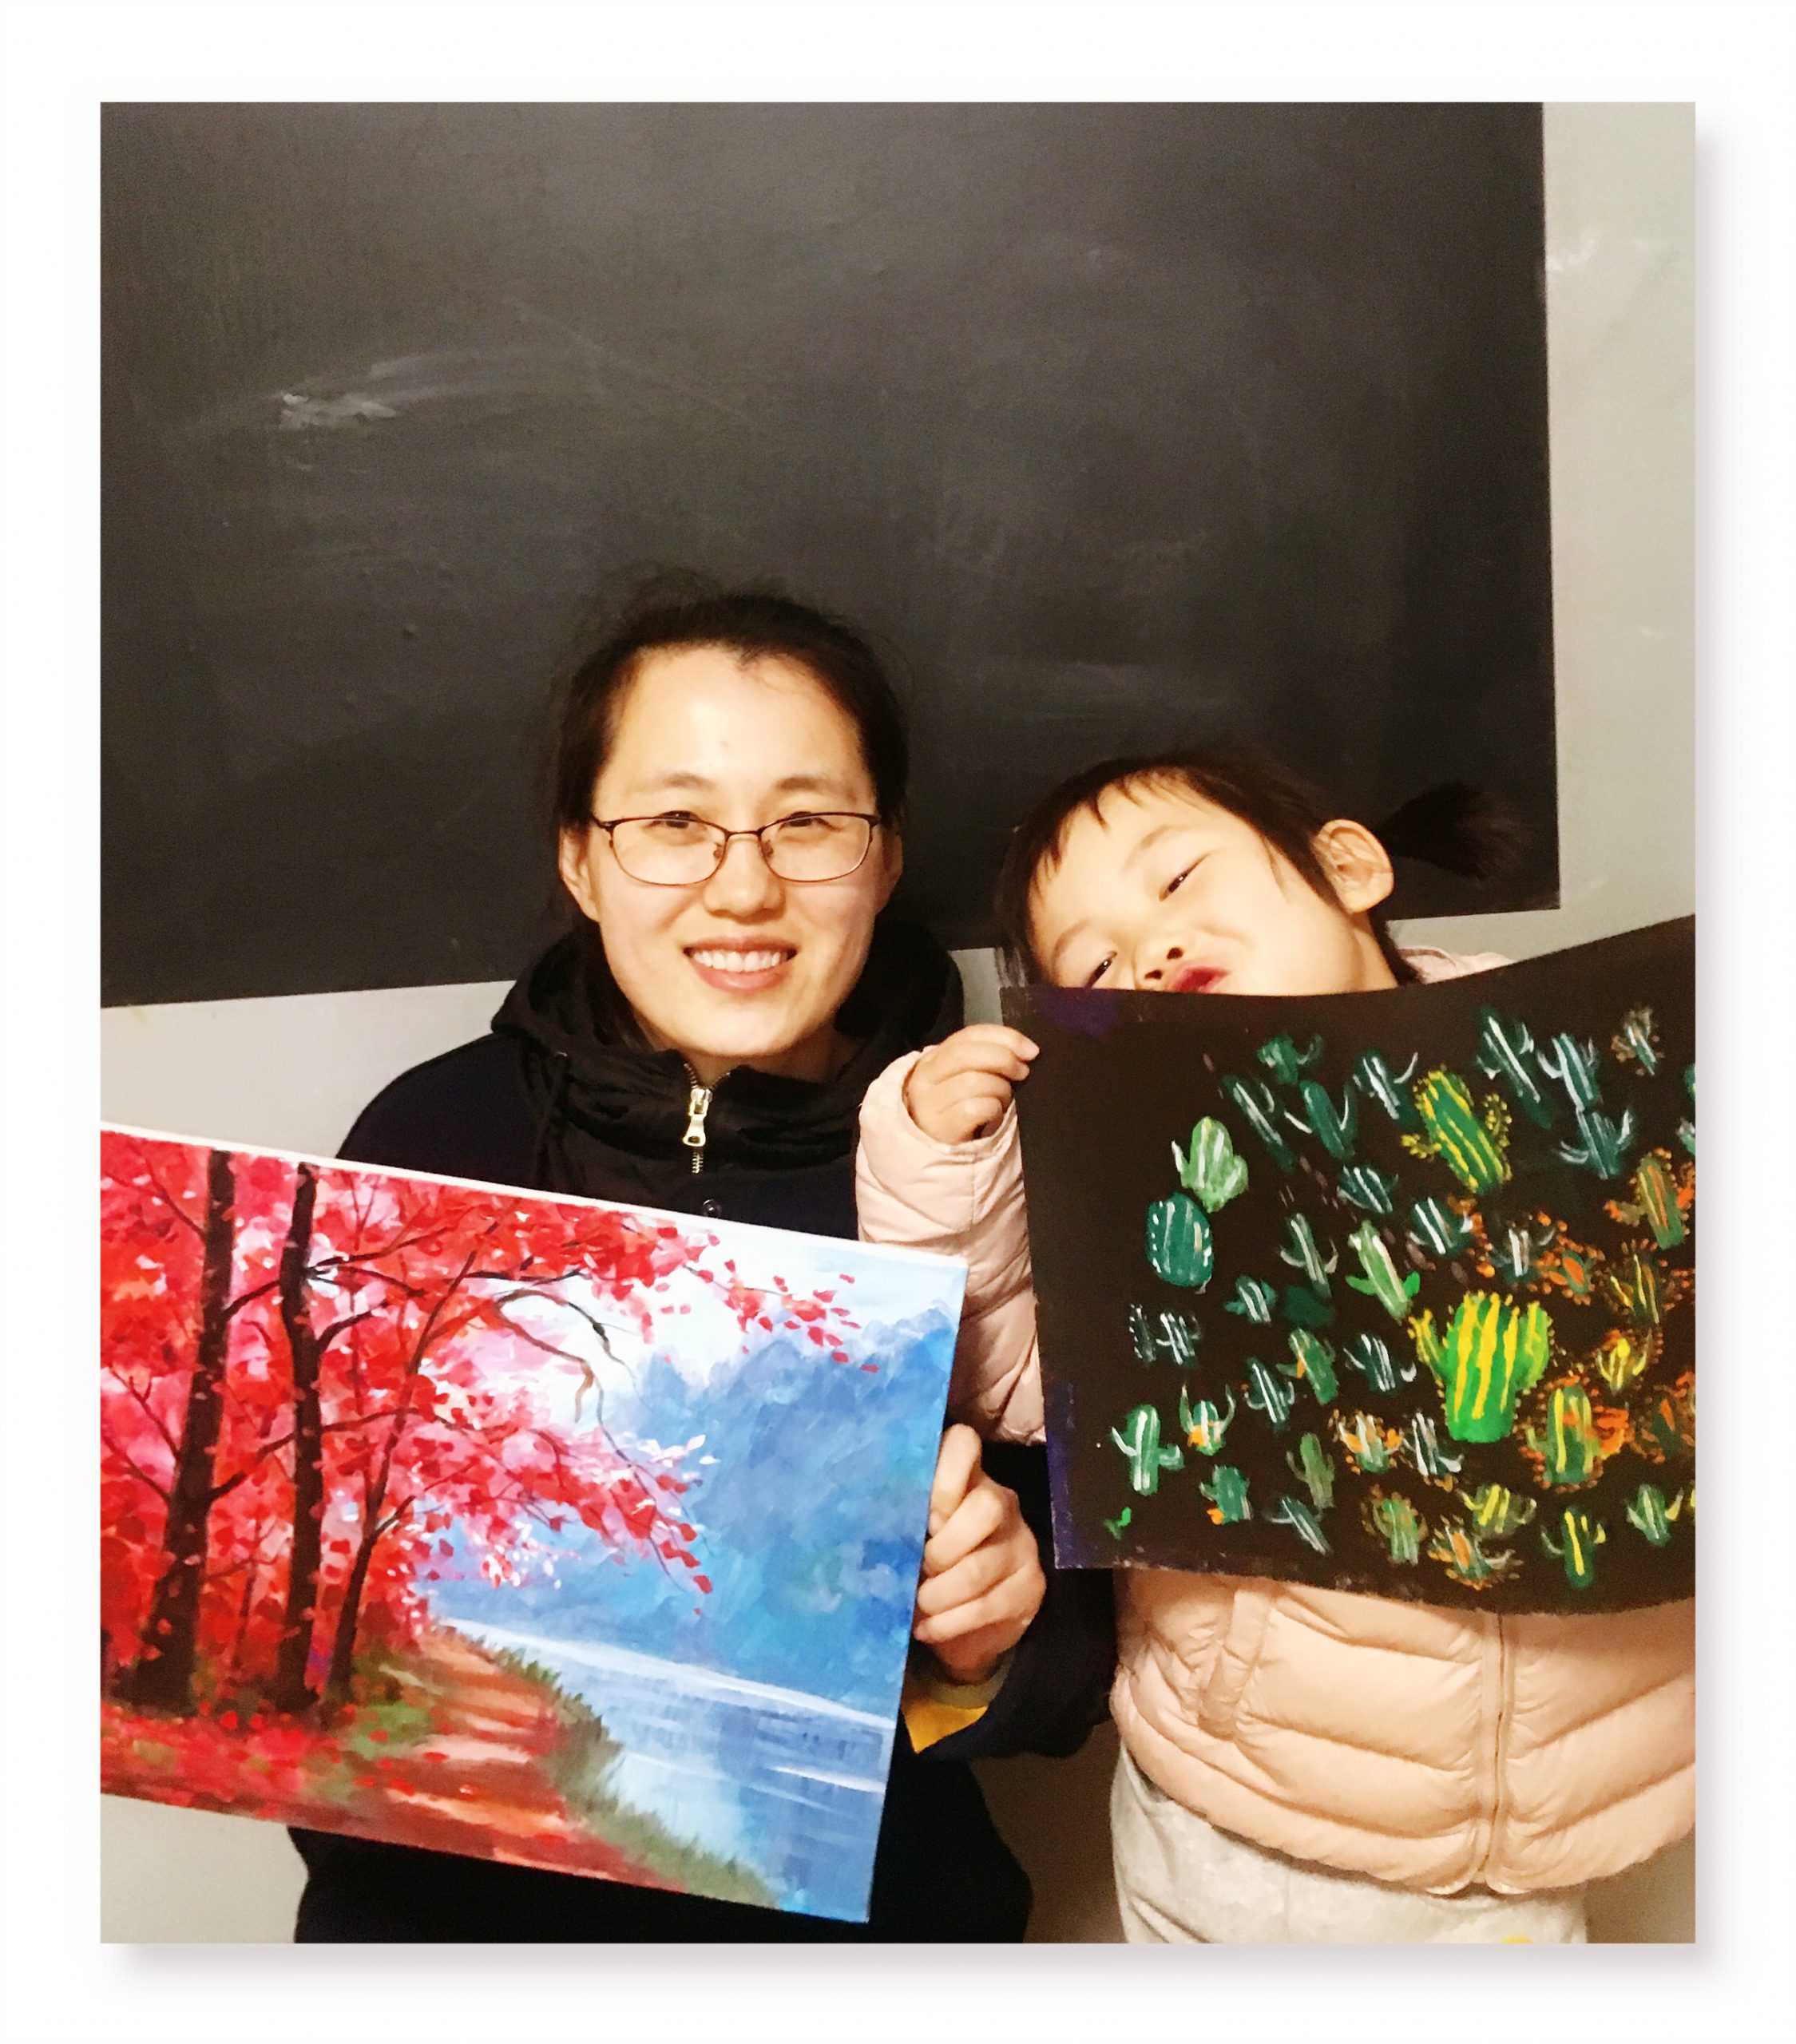 【2019年3月】墨境轩国际教育中心组织亲子DIY 油画课 活动 第2张